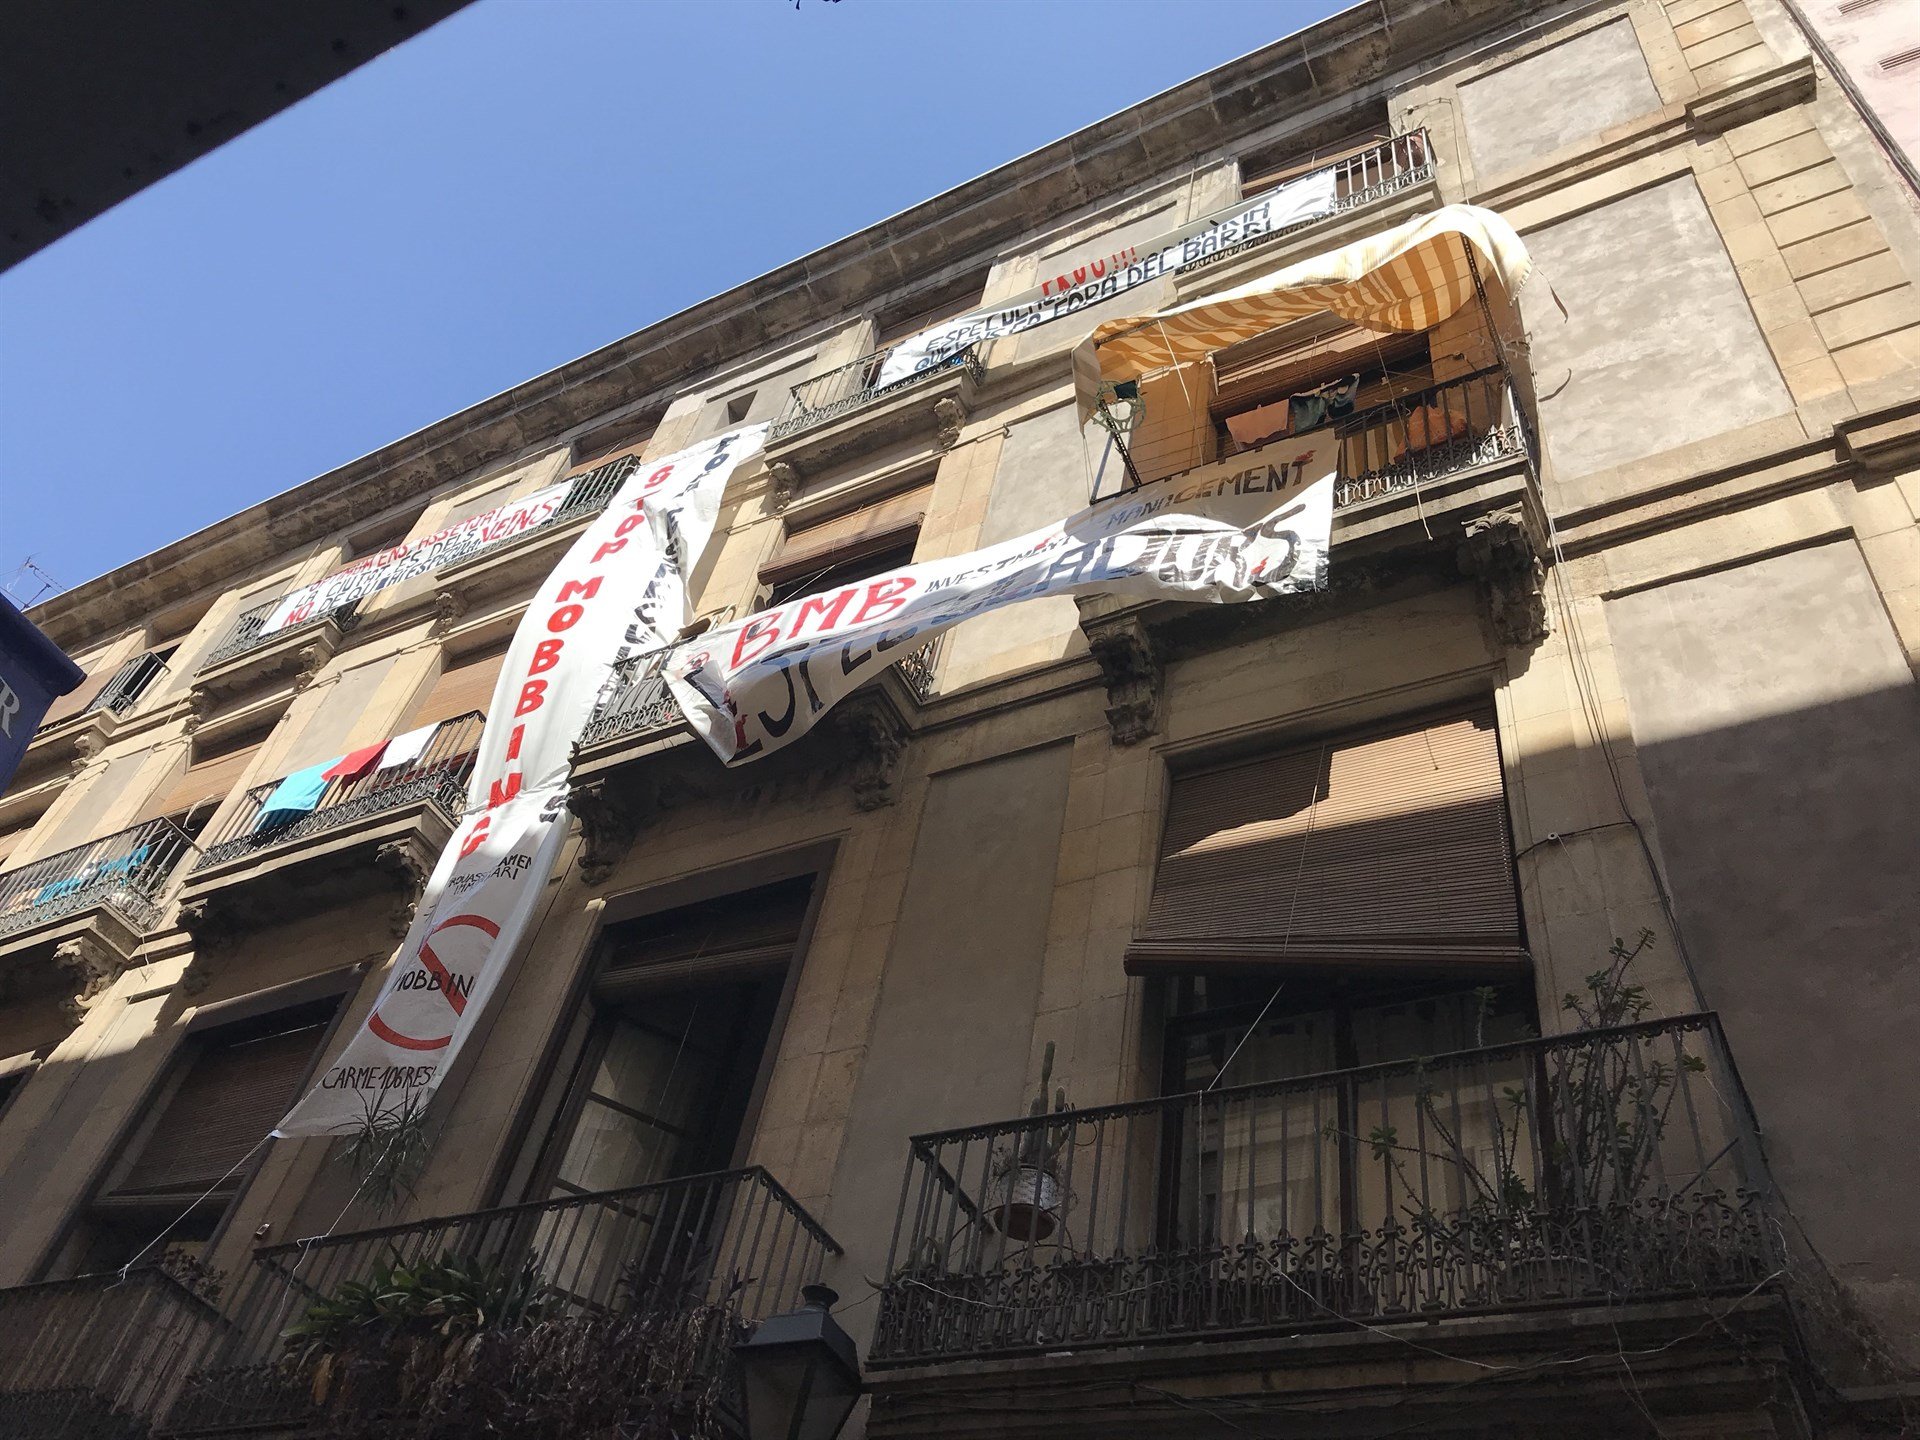 Ofensiva de Barcelona contra el mobbing inmobiliario de los fondos buitre